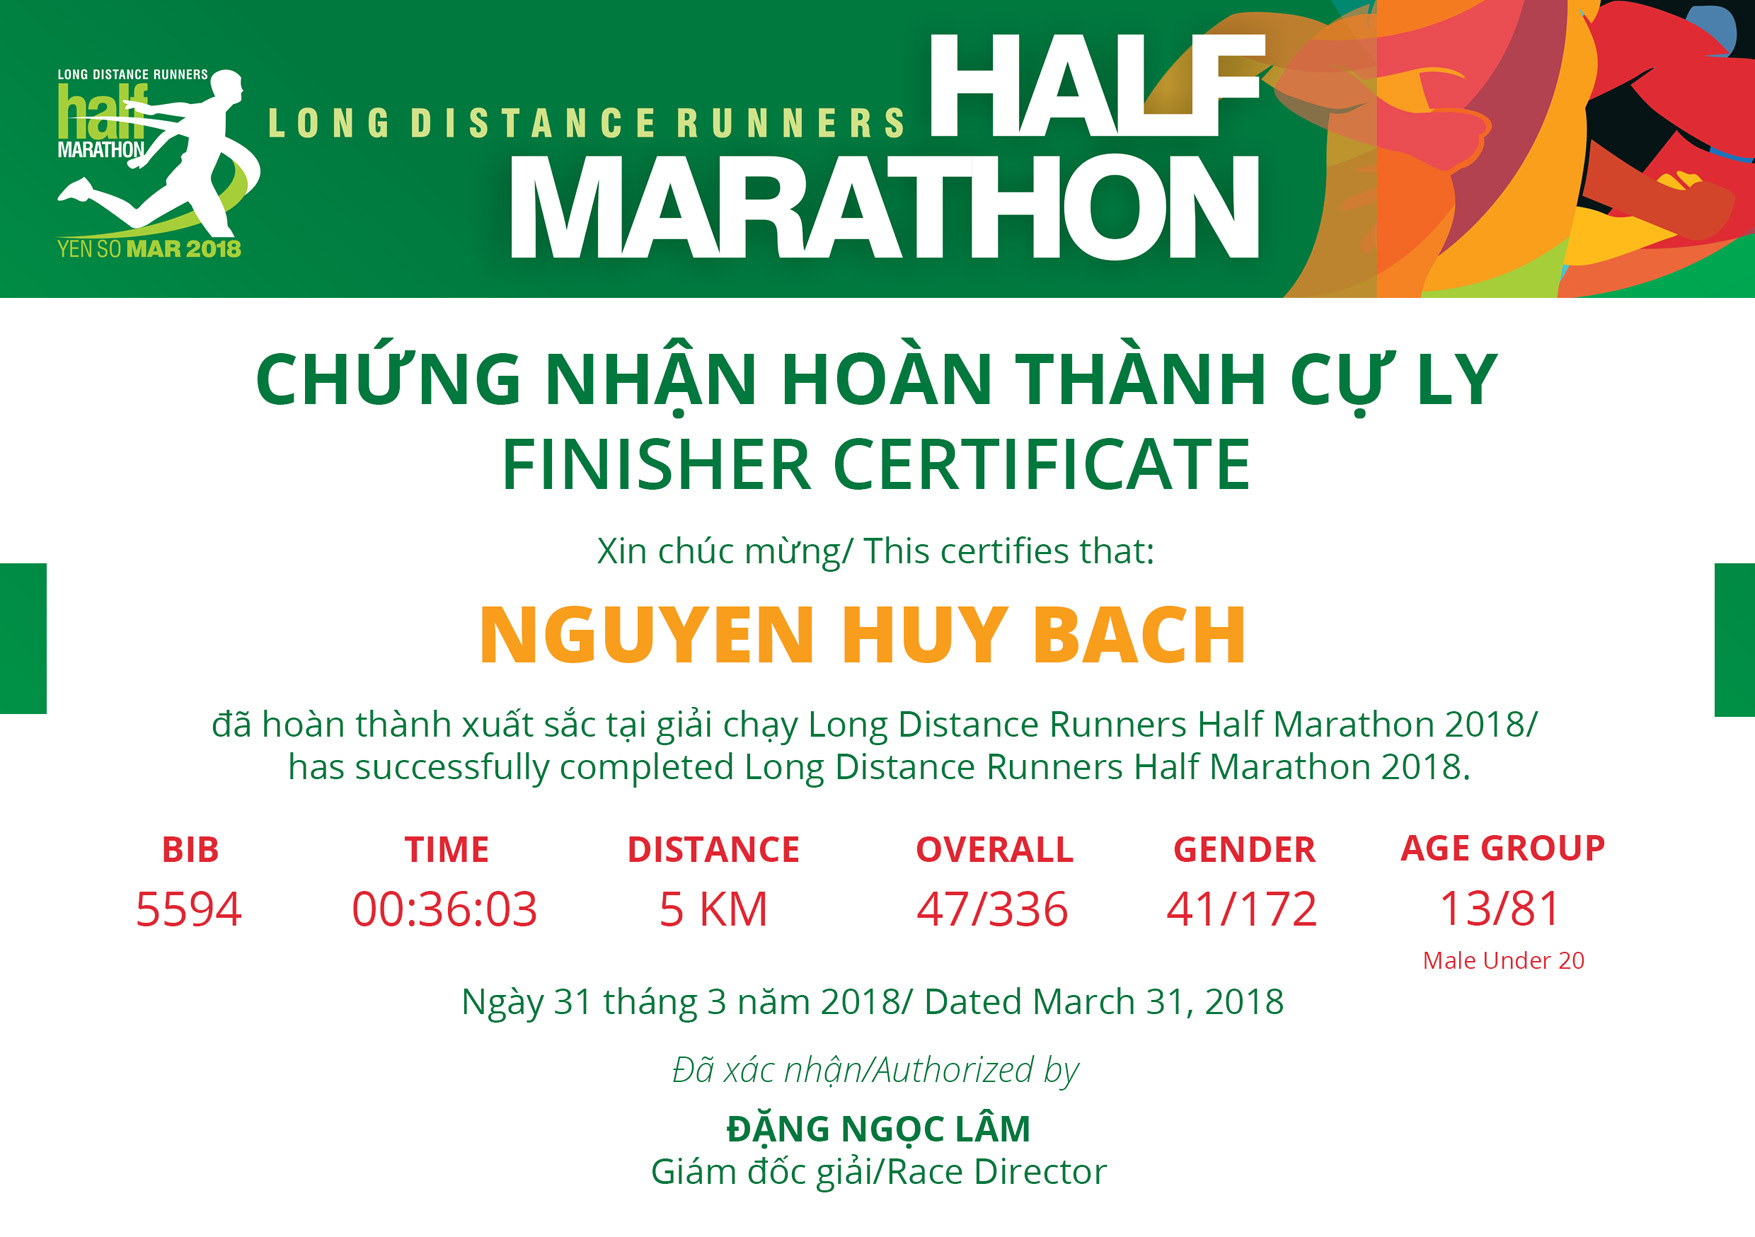 5594 - Nguyen Huy Bach